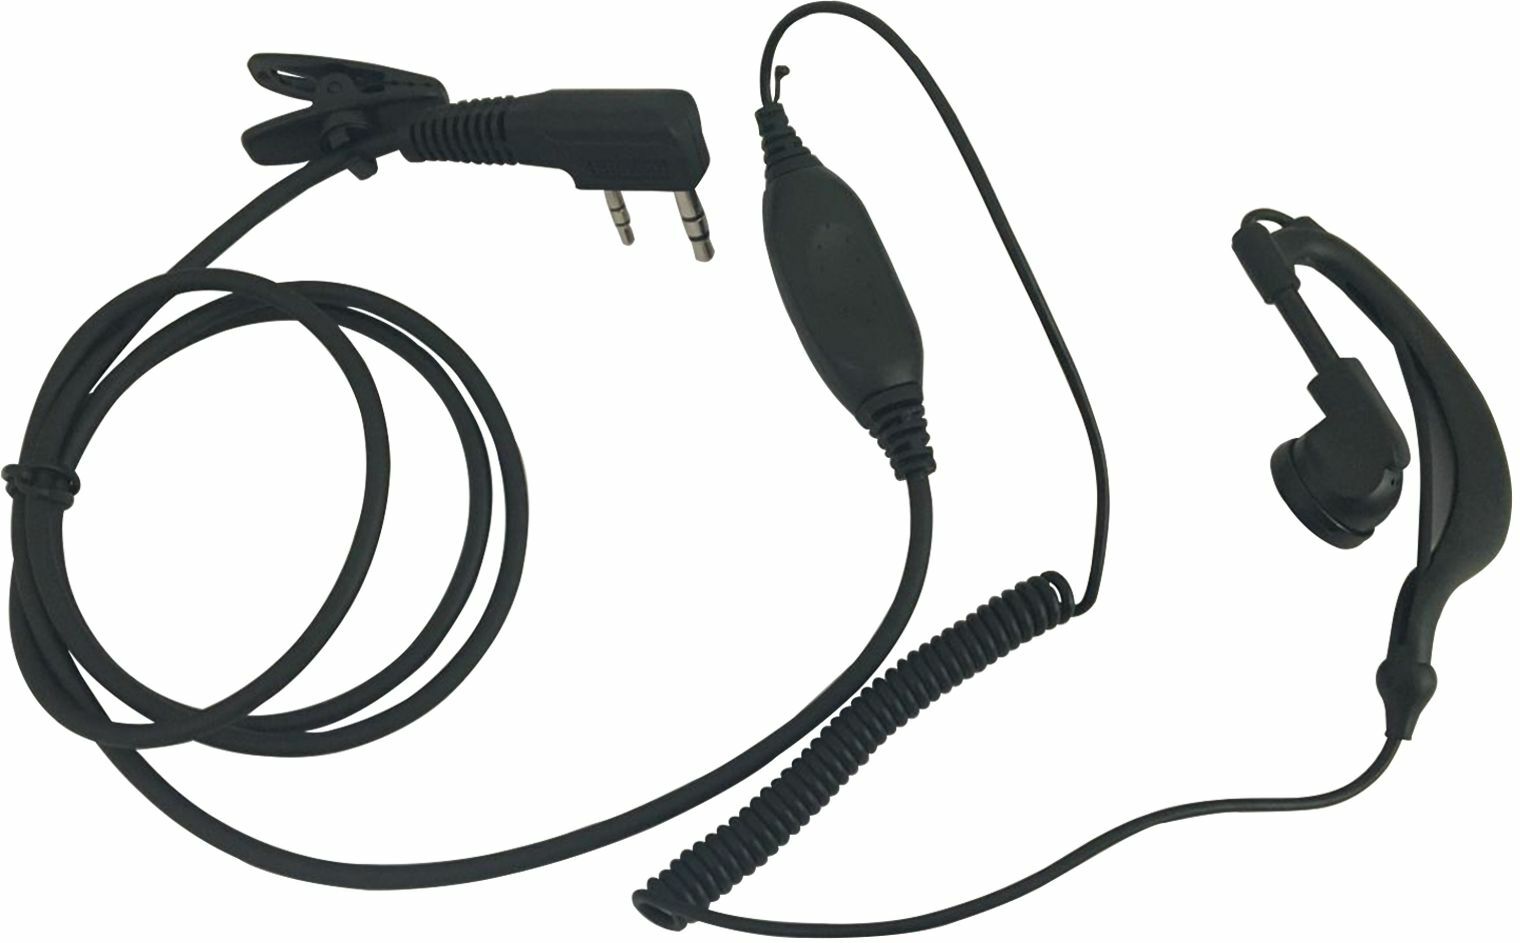 Power Acoustics Hs 06 - Headset-Mikrofon - Main picture